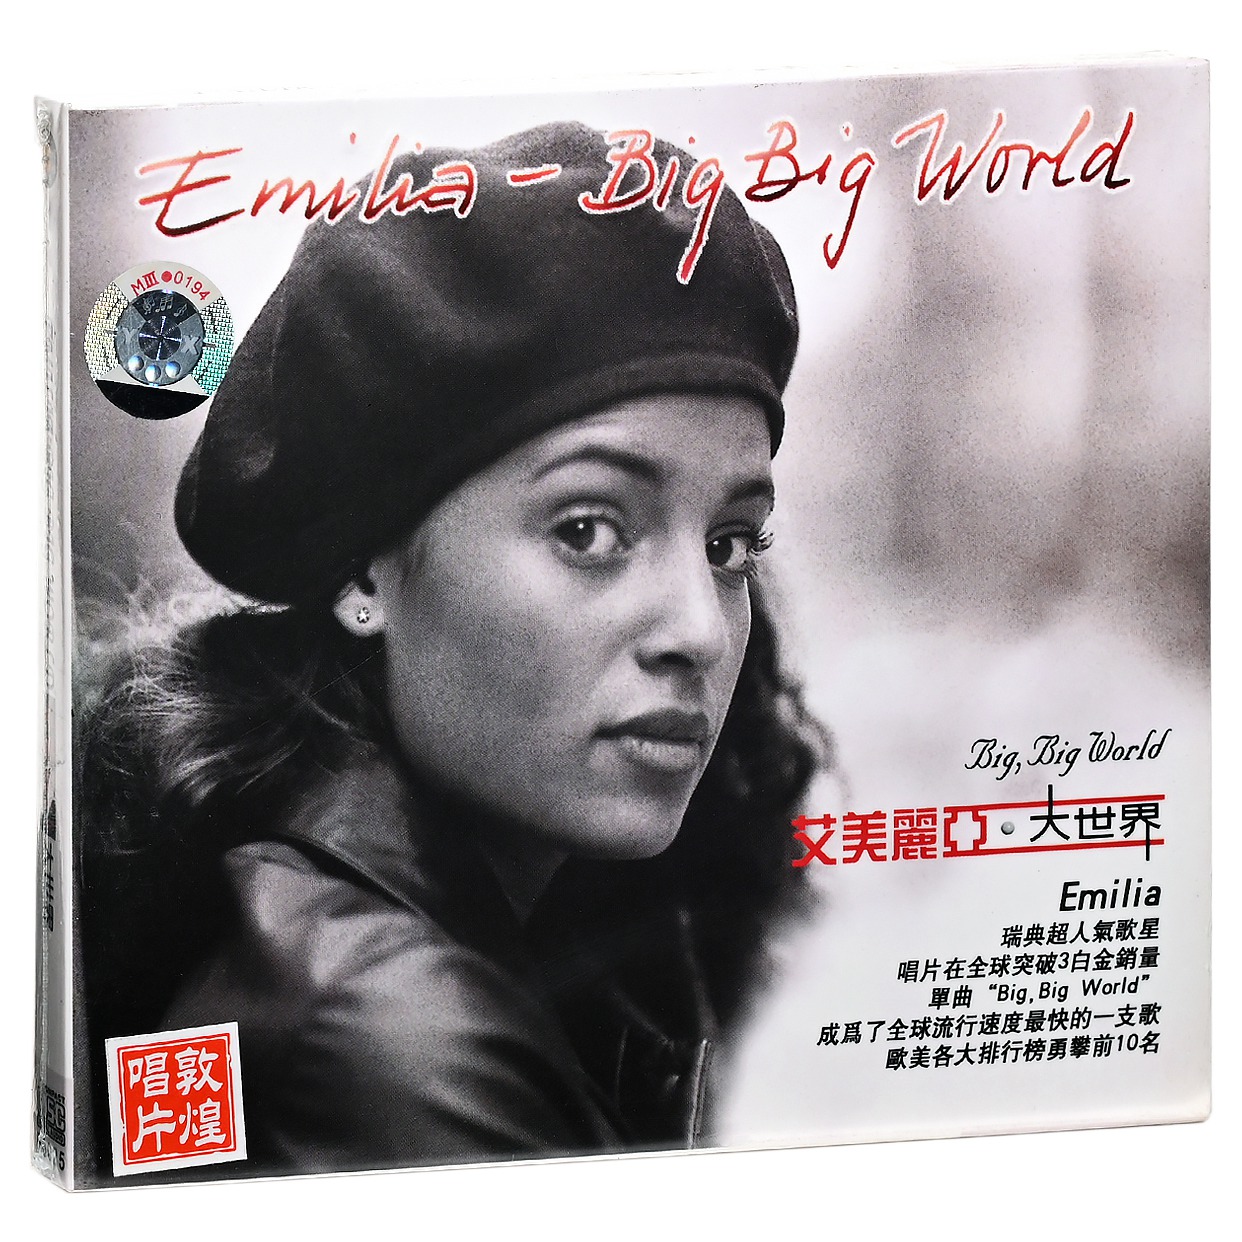 正版艾美丽亚 大世界 专辑唱片CD Emilia Big Big World